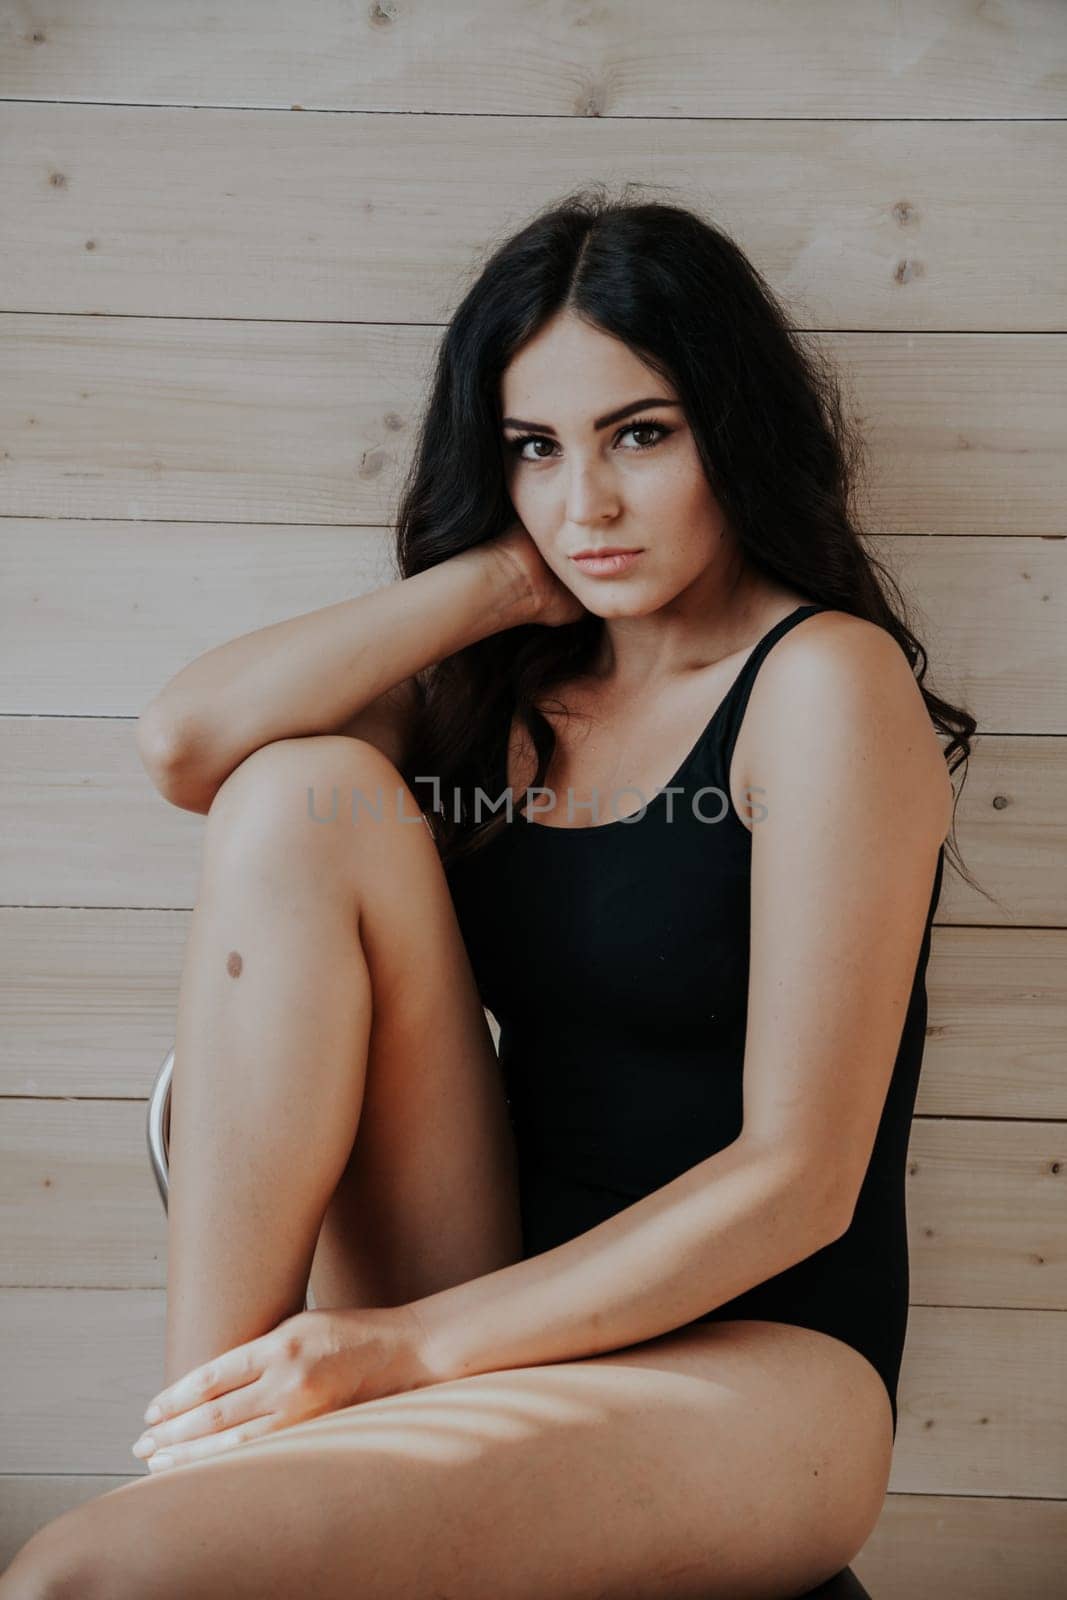 nice girl in black body posing in the Studio by Simakov